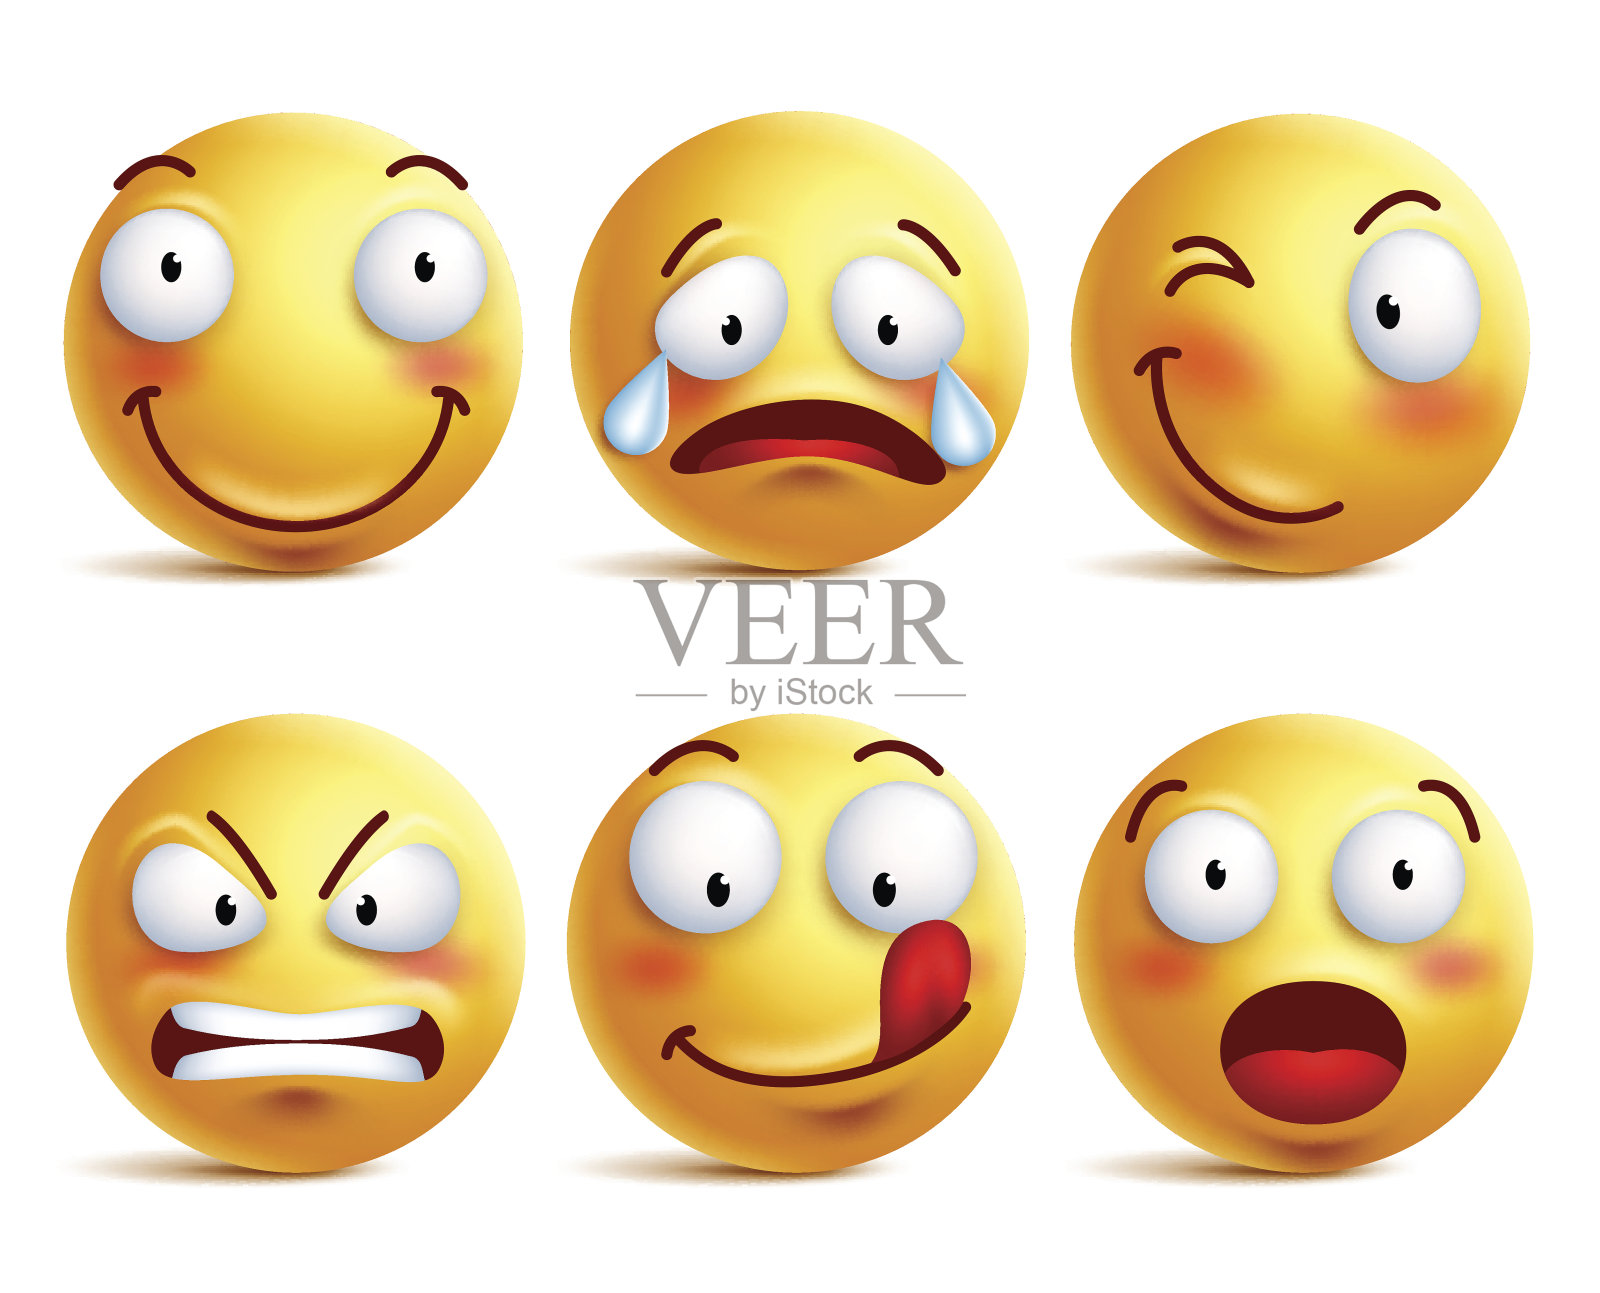 一组笑脸图标或黄色表情符号与表情插画图片素材